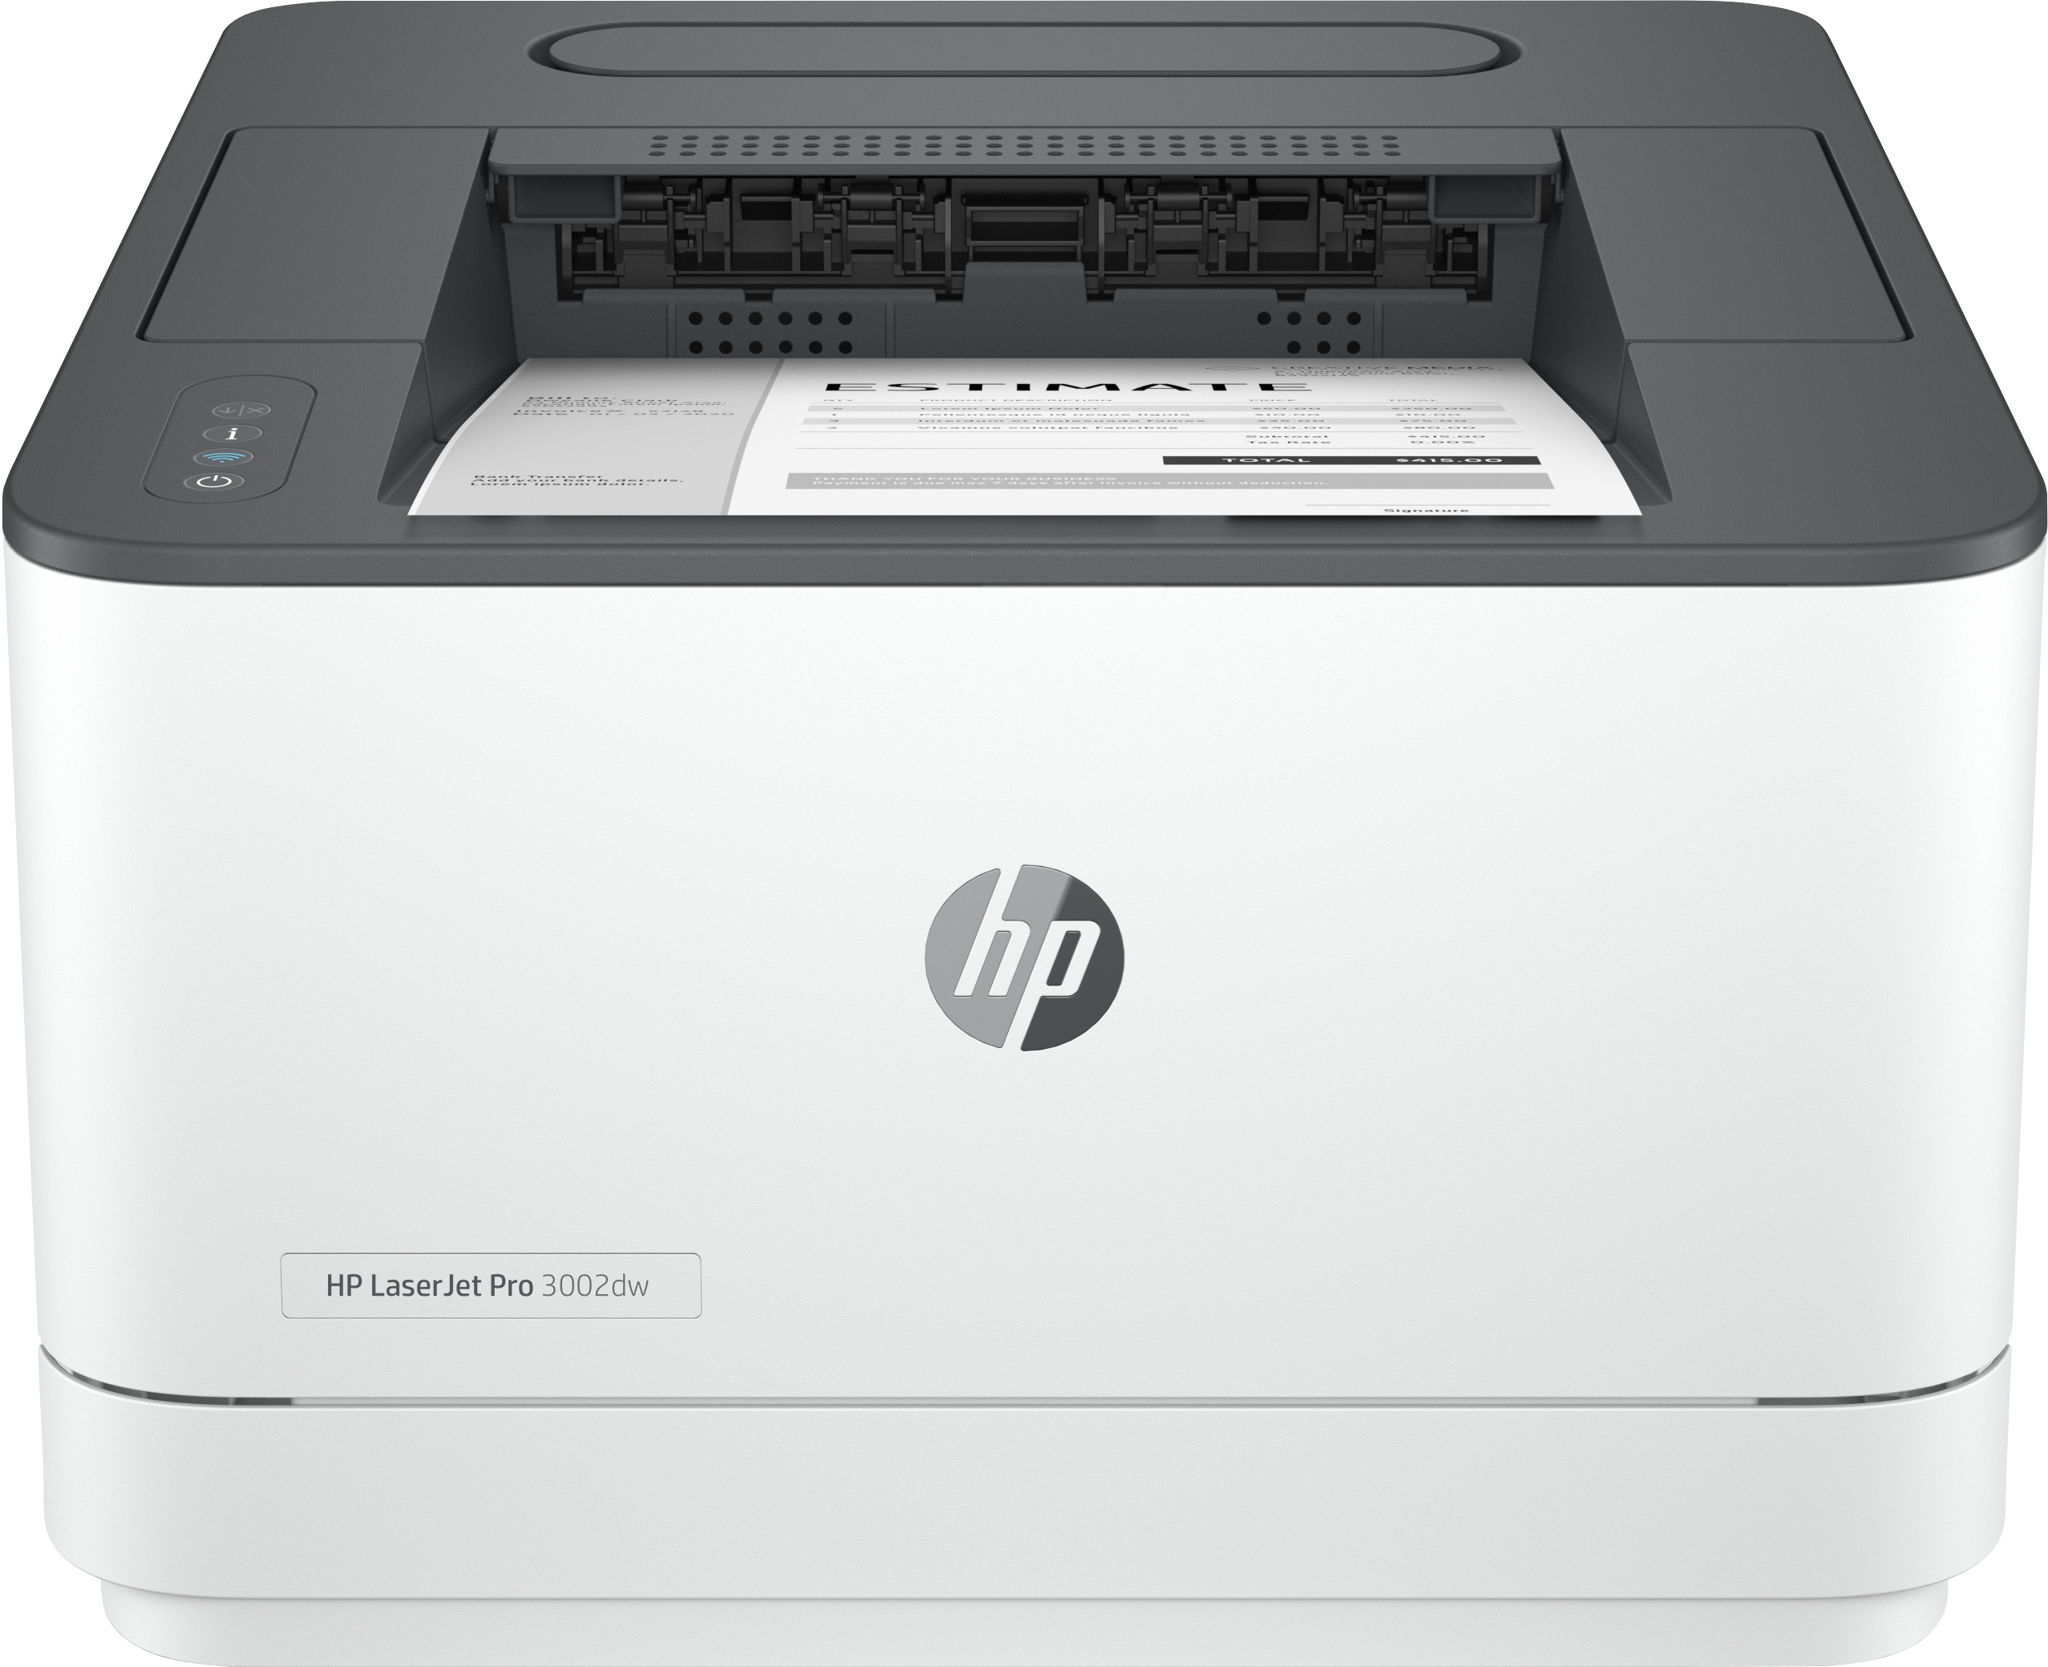 Bild von HP LaserJet Pro 3002dw Drucker - Schwarzweiß - Drucker für Kleine und mittlere Unternehmen - Drucken - Beidseitiger Druck - Laser - 1200 x 1200 DPI - A4 - 33 Seiten pro Minute - Doppelseitiger Druck - Grau - Weiß